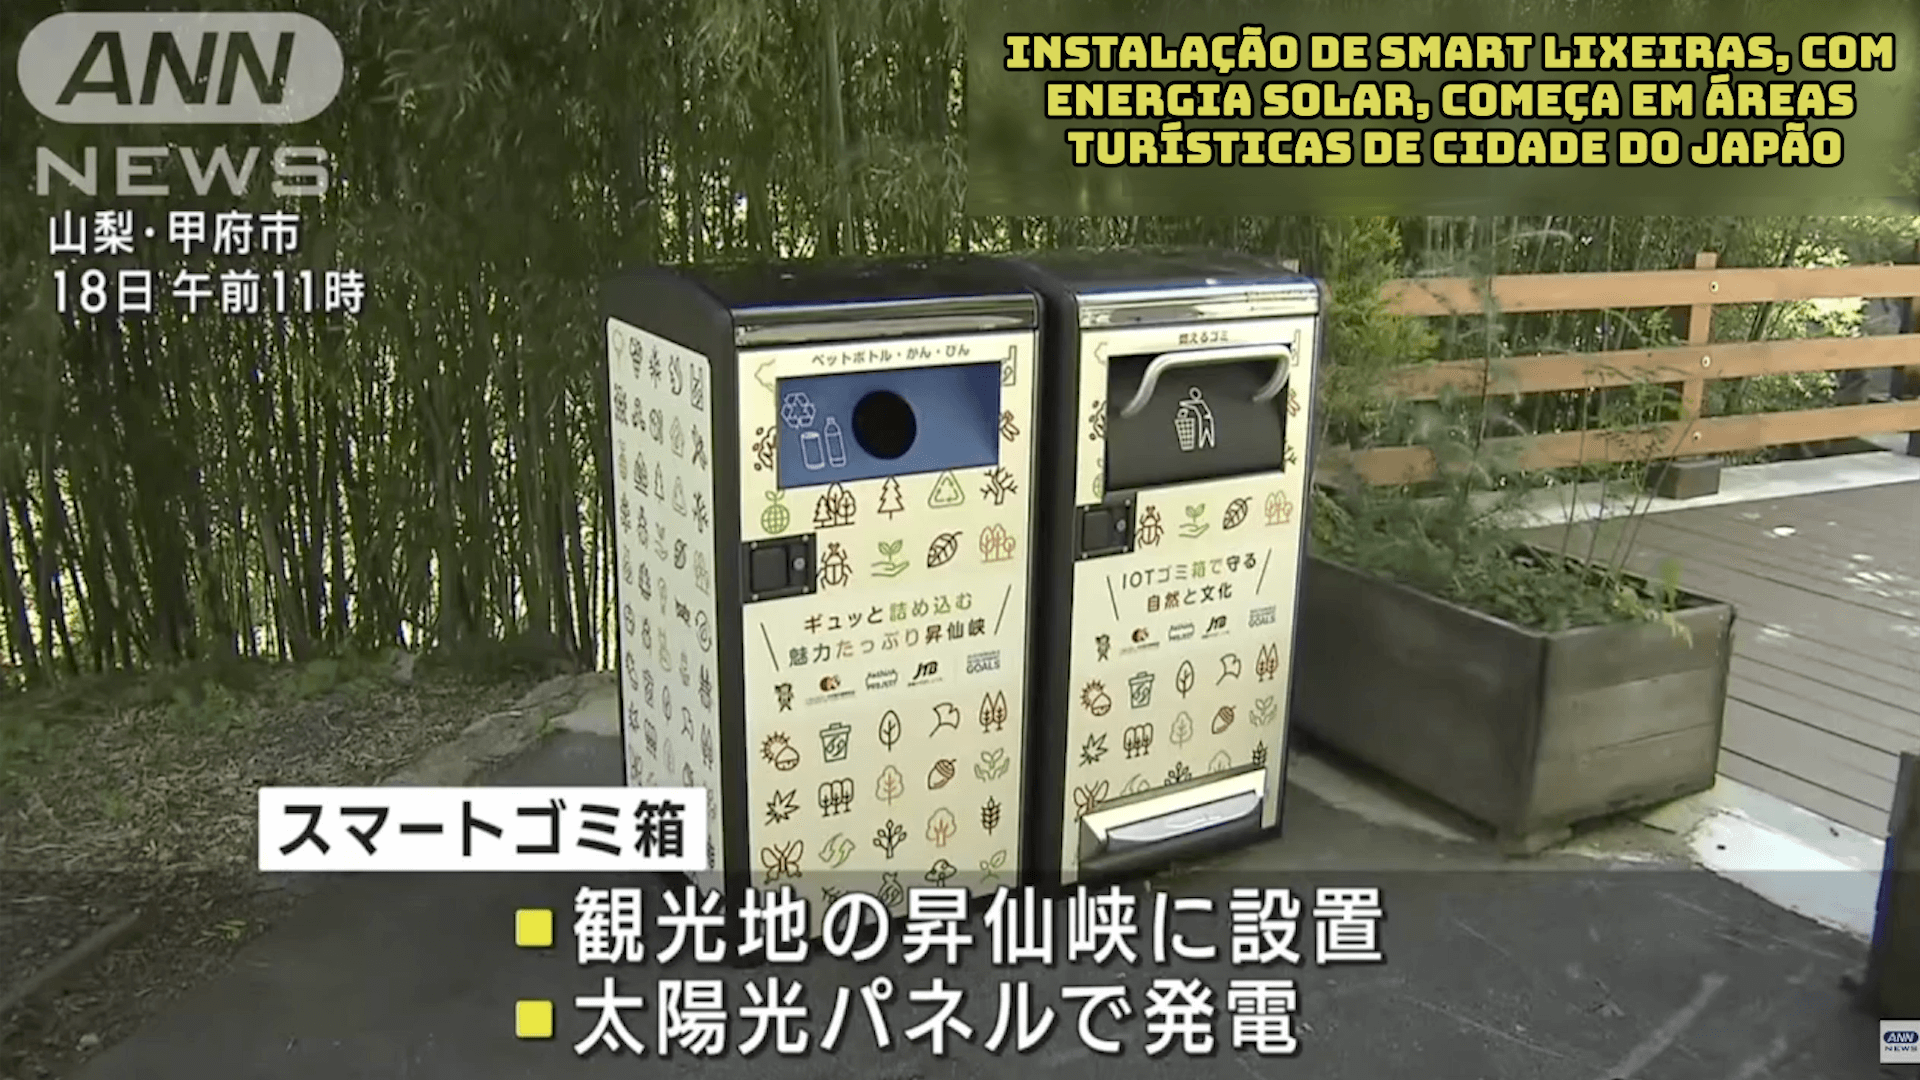 Instalação de Smart Lixeiras, com Energia Solar, começa em áreas turísticas de cidade do Japão 